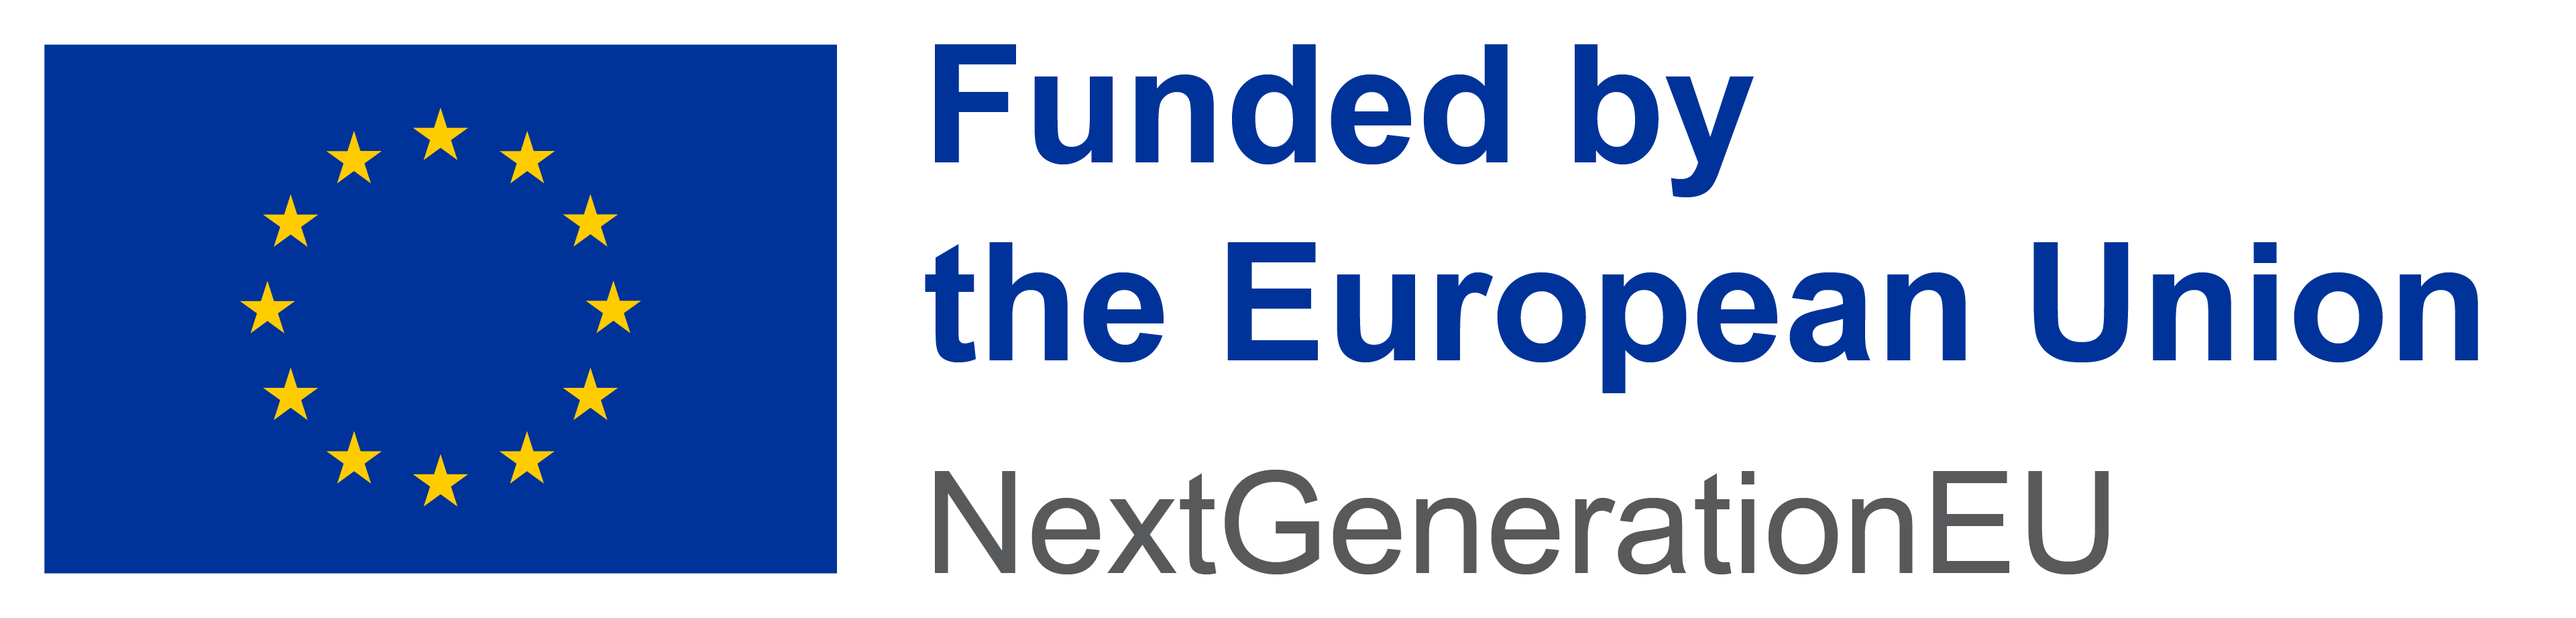 Funded European Union NGEU